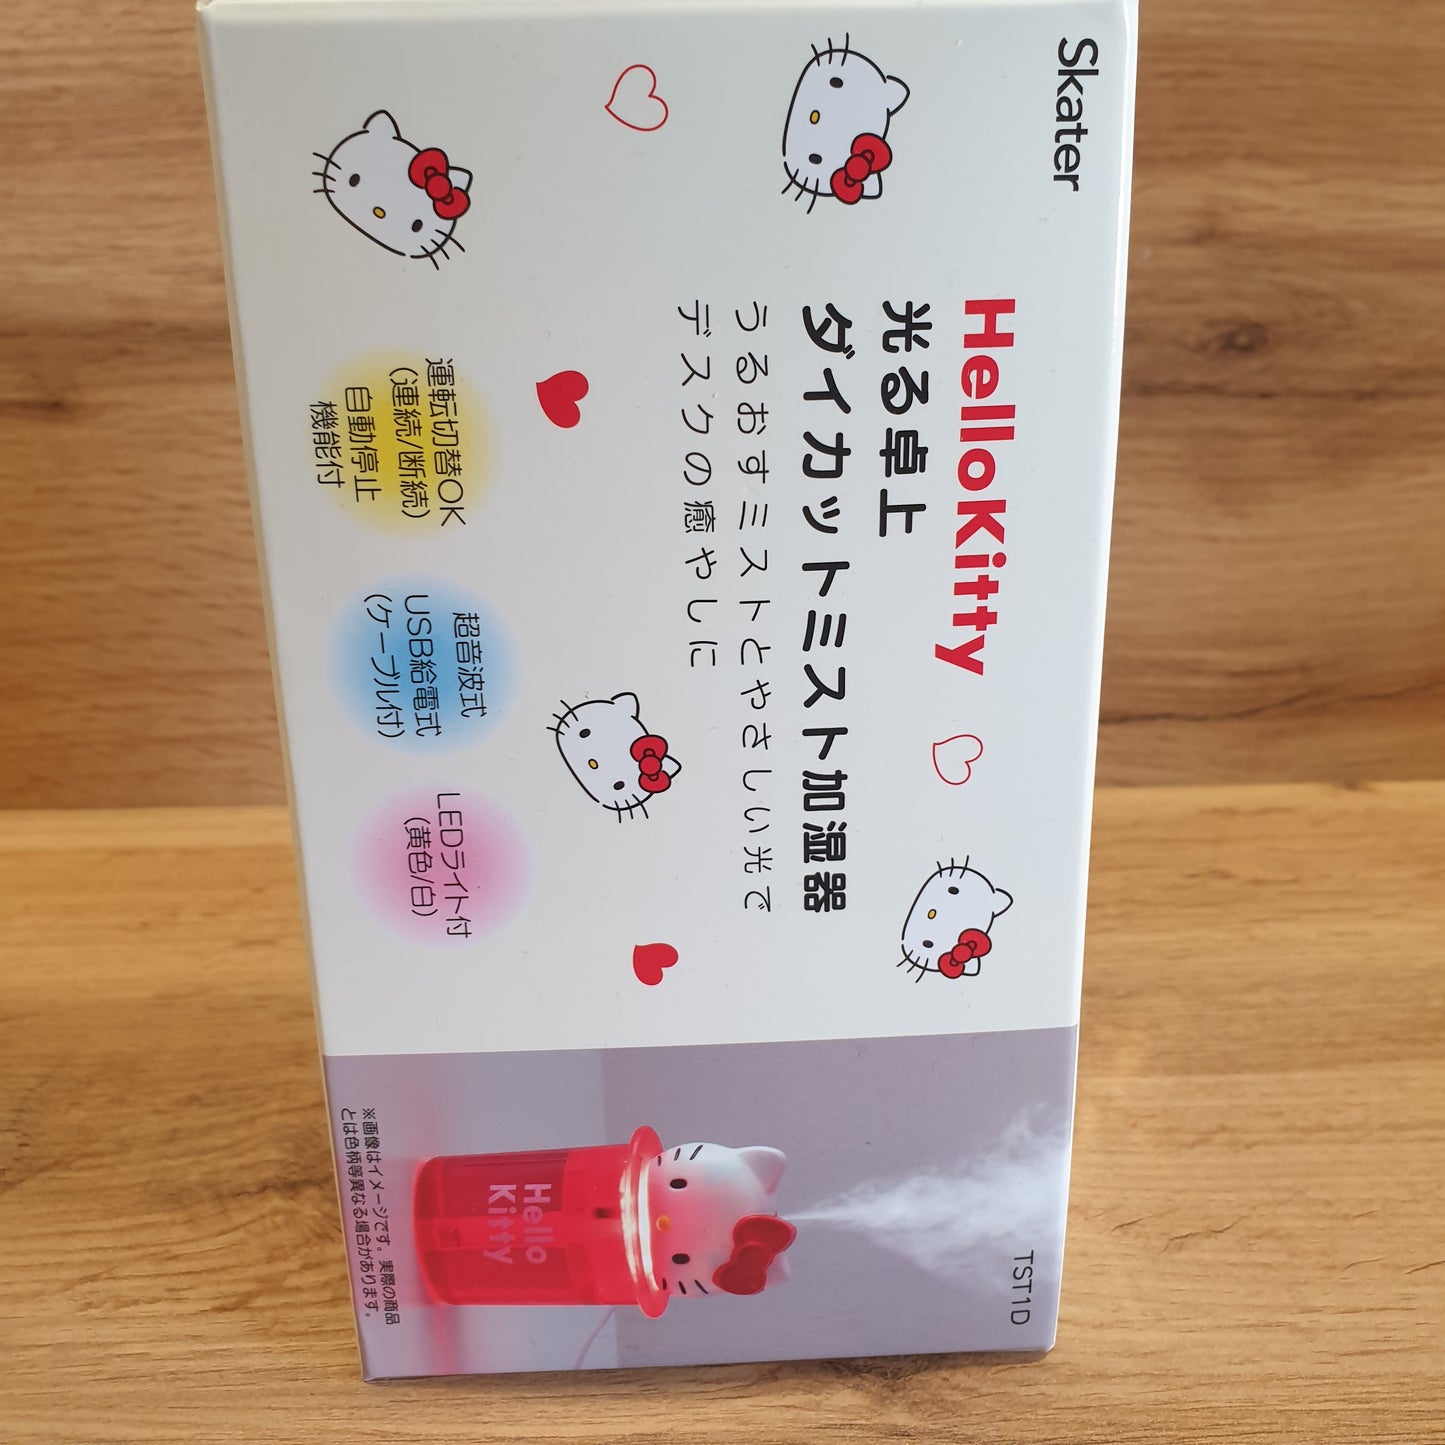 Hello Kitty Desktop Humidifier